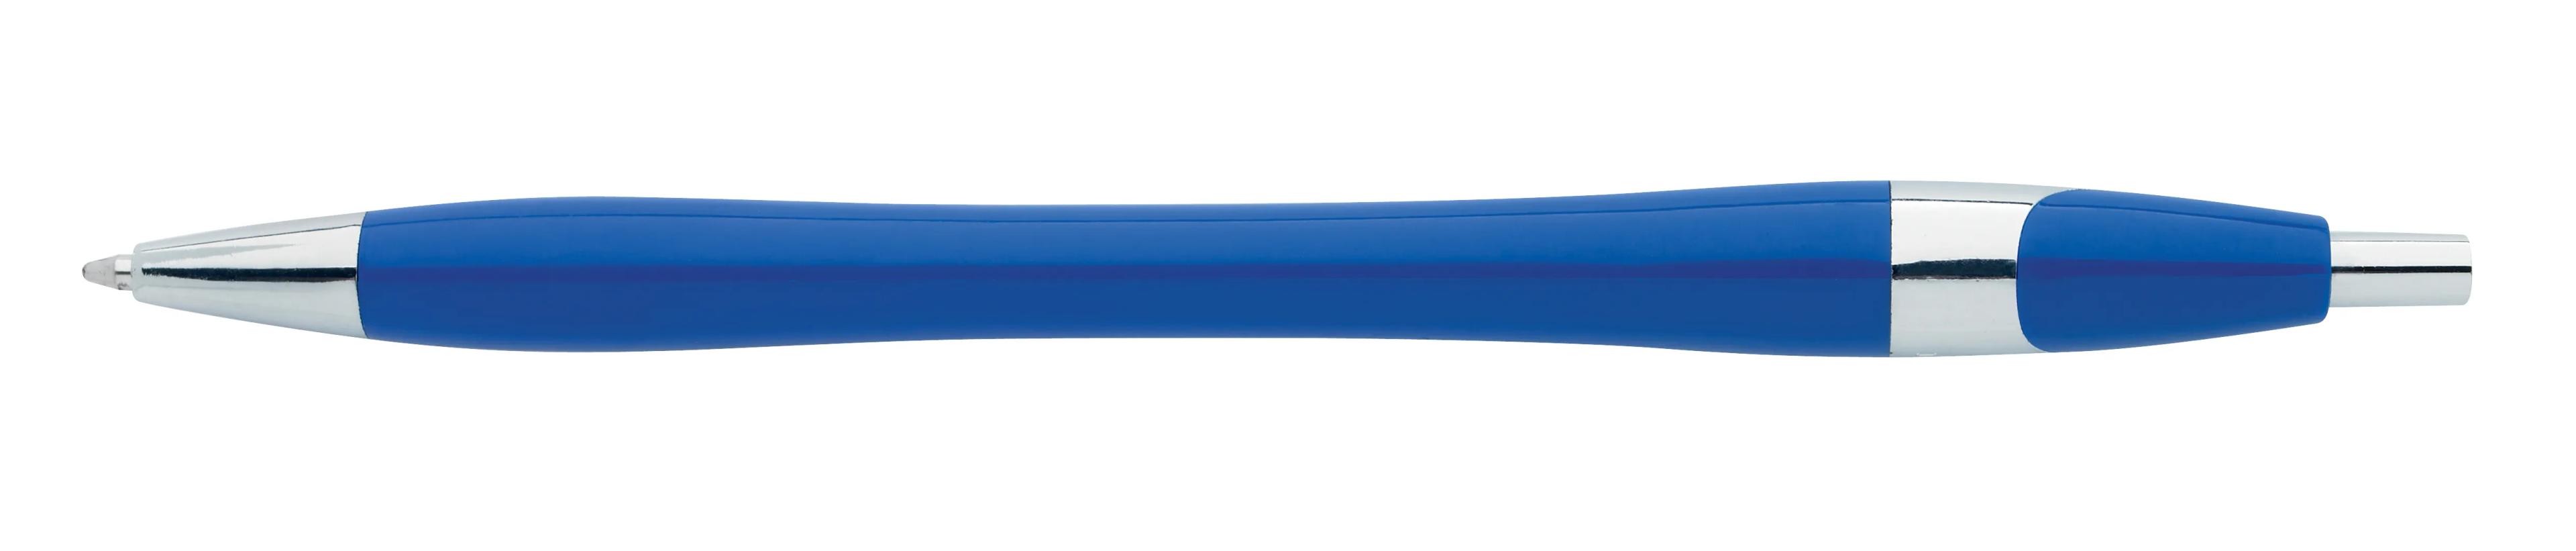 Chrome Dart Pen 6 of 32